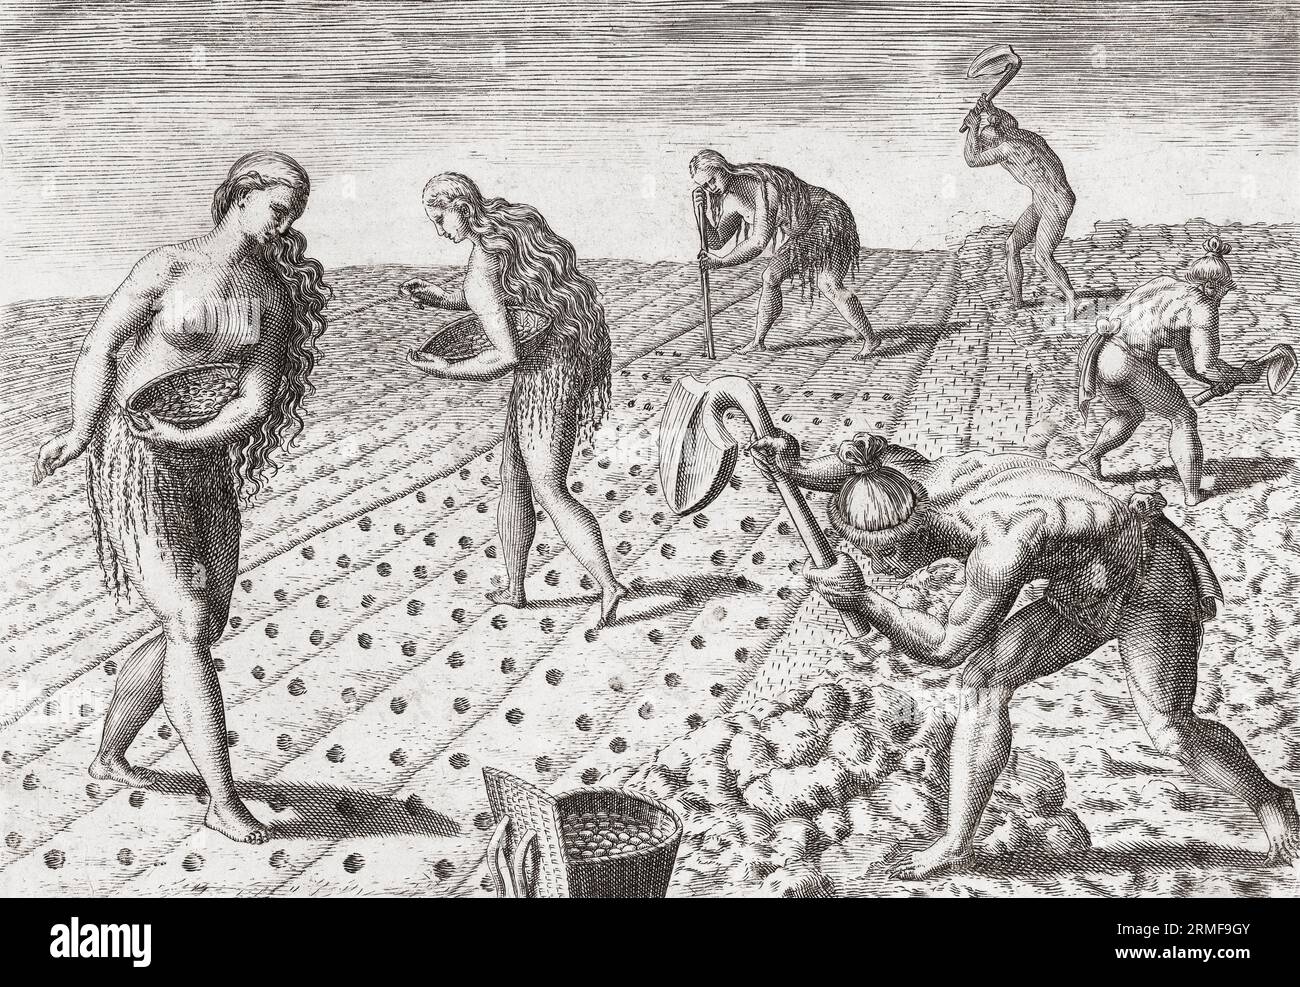 Los nativos americanos, tanto hombres como mujeres, cultivan el suelo y plantan semillas. Después de una obra de finales del siglo XVI de Theodor de Bry. Foto de stock